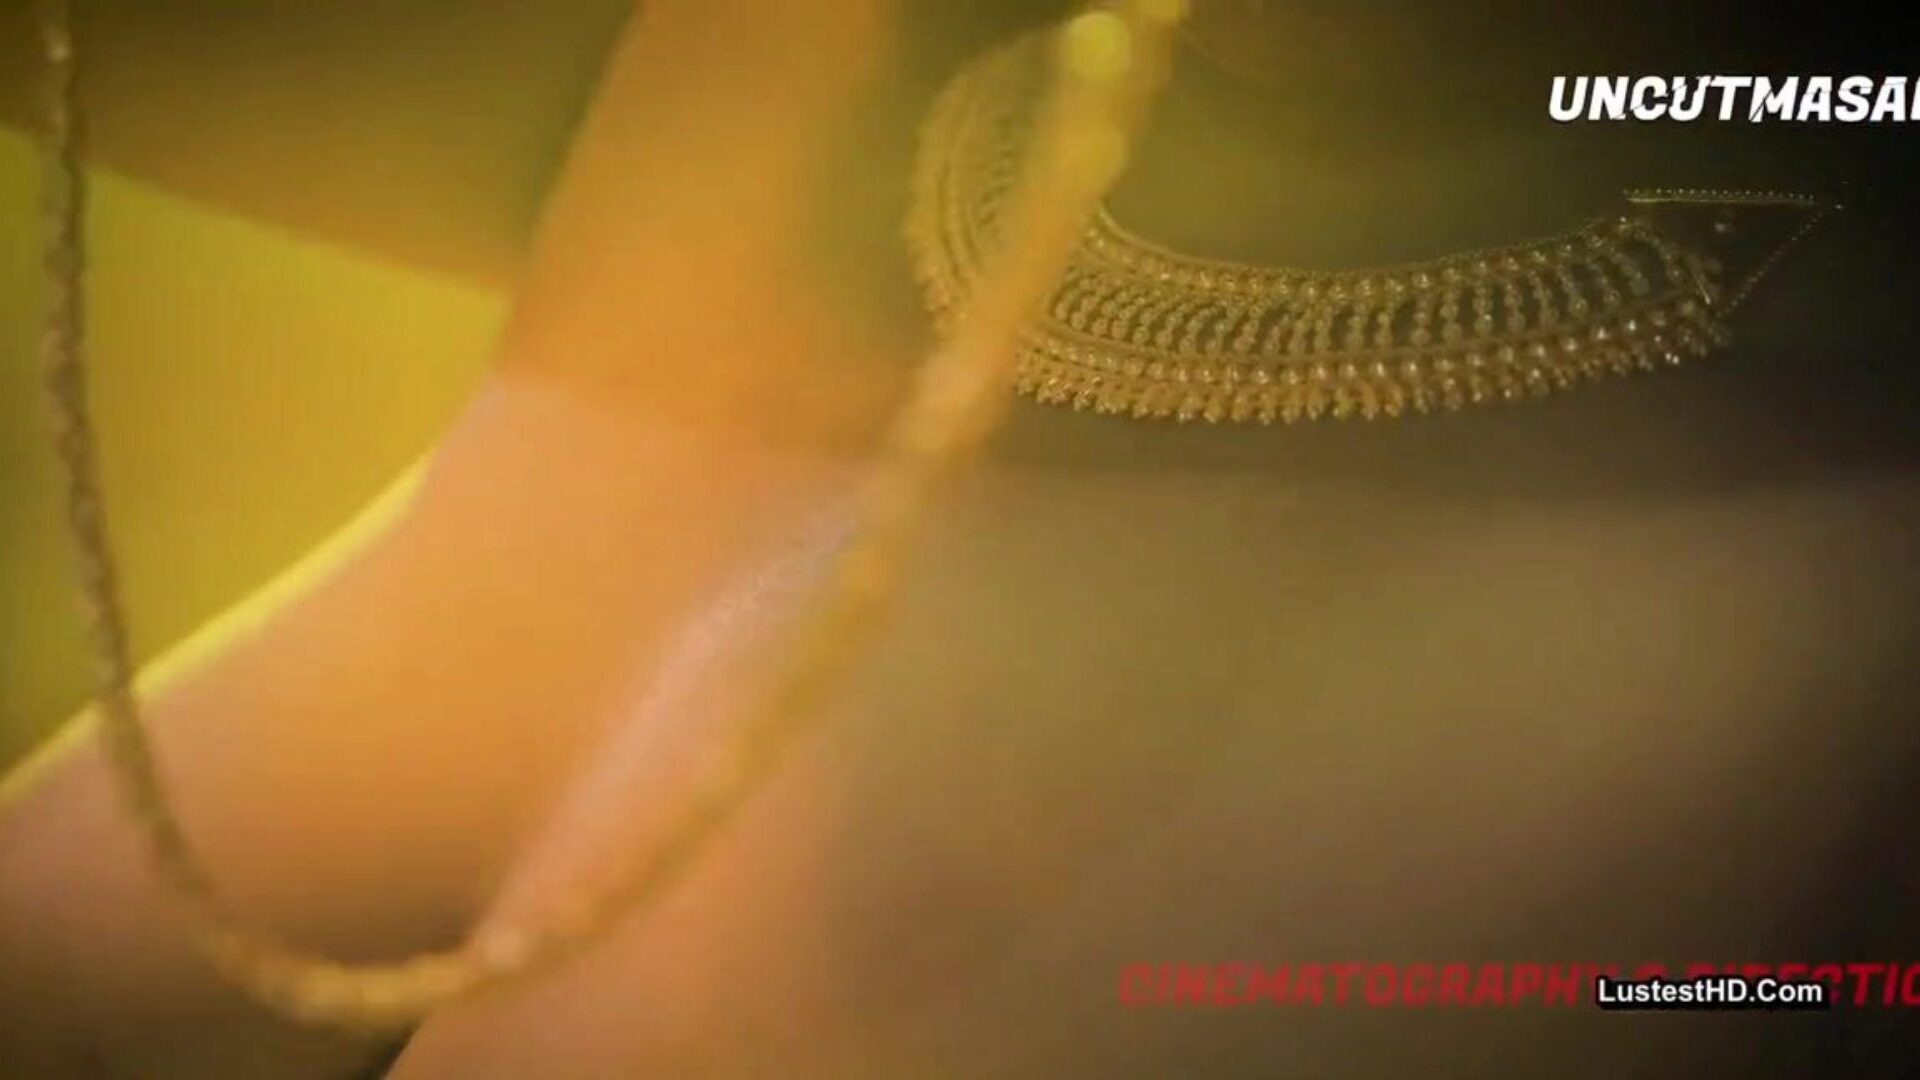 ινδικό καυτό και σέξι επεισόδιο kama sutra, πορνό 27: xhamster παρακολουθήστε ινδικό καυτό και σέξι ταινία επεισόδιο kama sutra στο xhamster, ο πιο εξαιρετικός πόρος ιστού σωλήνα hd fuck-a-thon με τόνους δωρεάν ινδικής προβολής ipad βίντεο πορνογραφίας